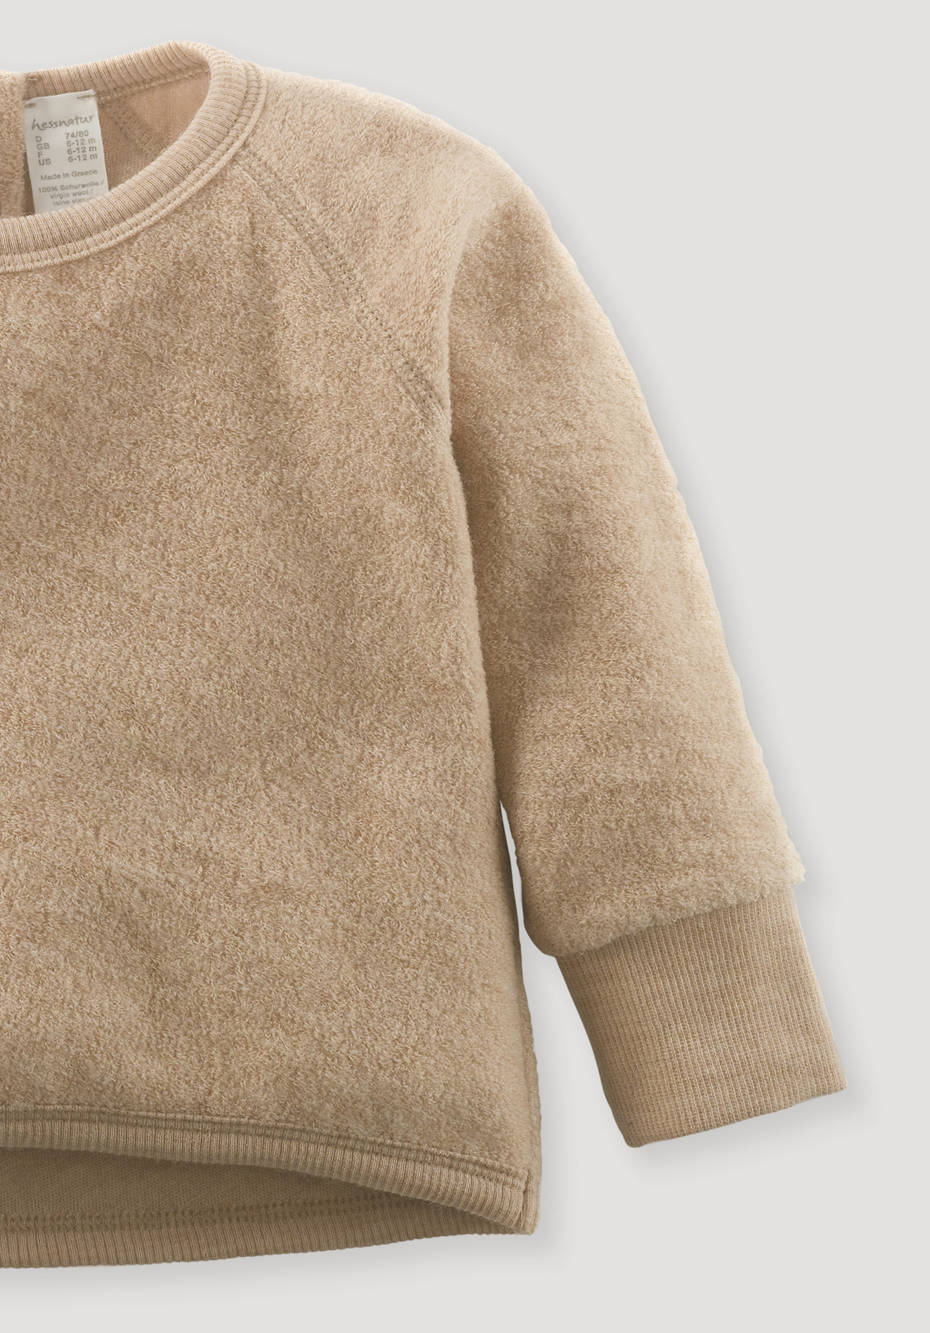 Wool terry sweatshirt made from pure organic merino wool